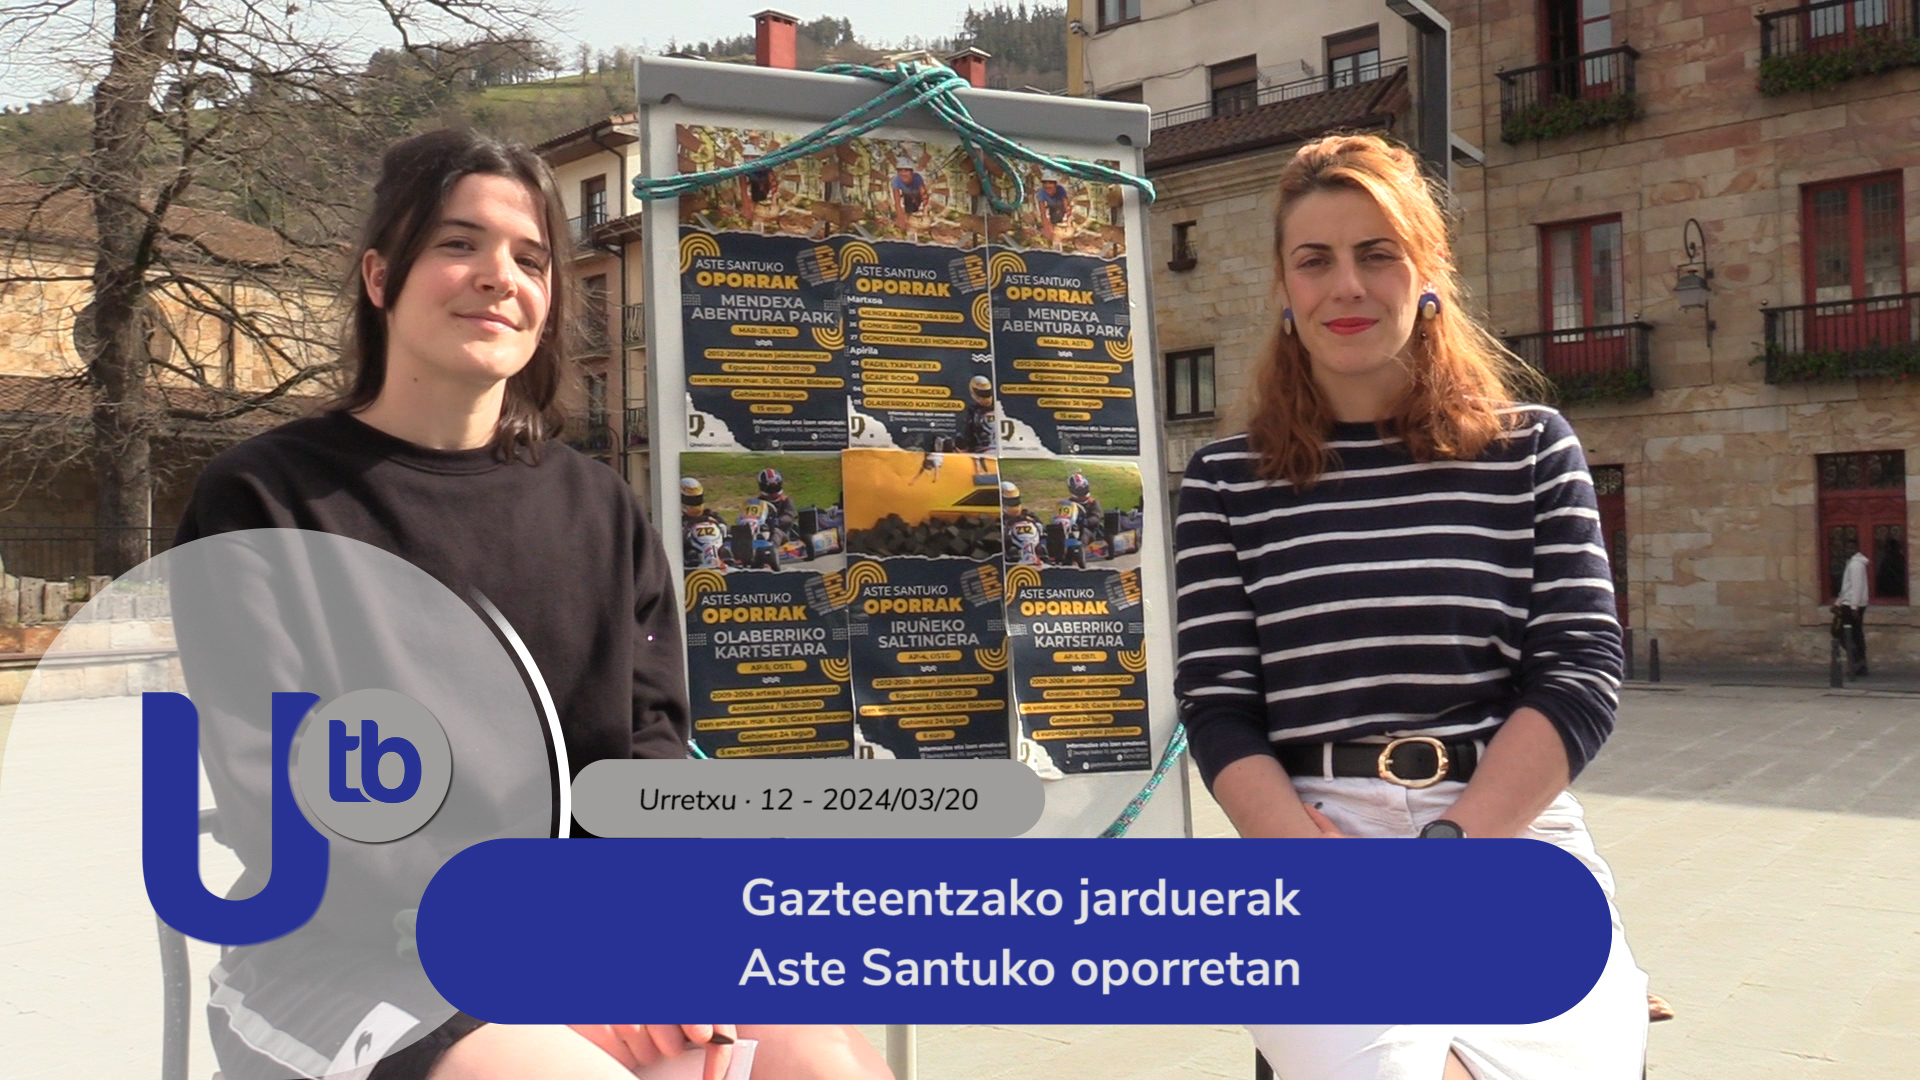 Actividades para los jóvenes en Vacaciones de Semana Santa / Gazteentzako jarduerak Aste Santuko oporretan